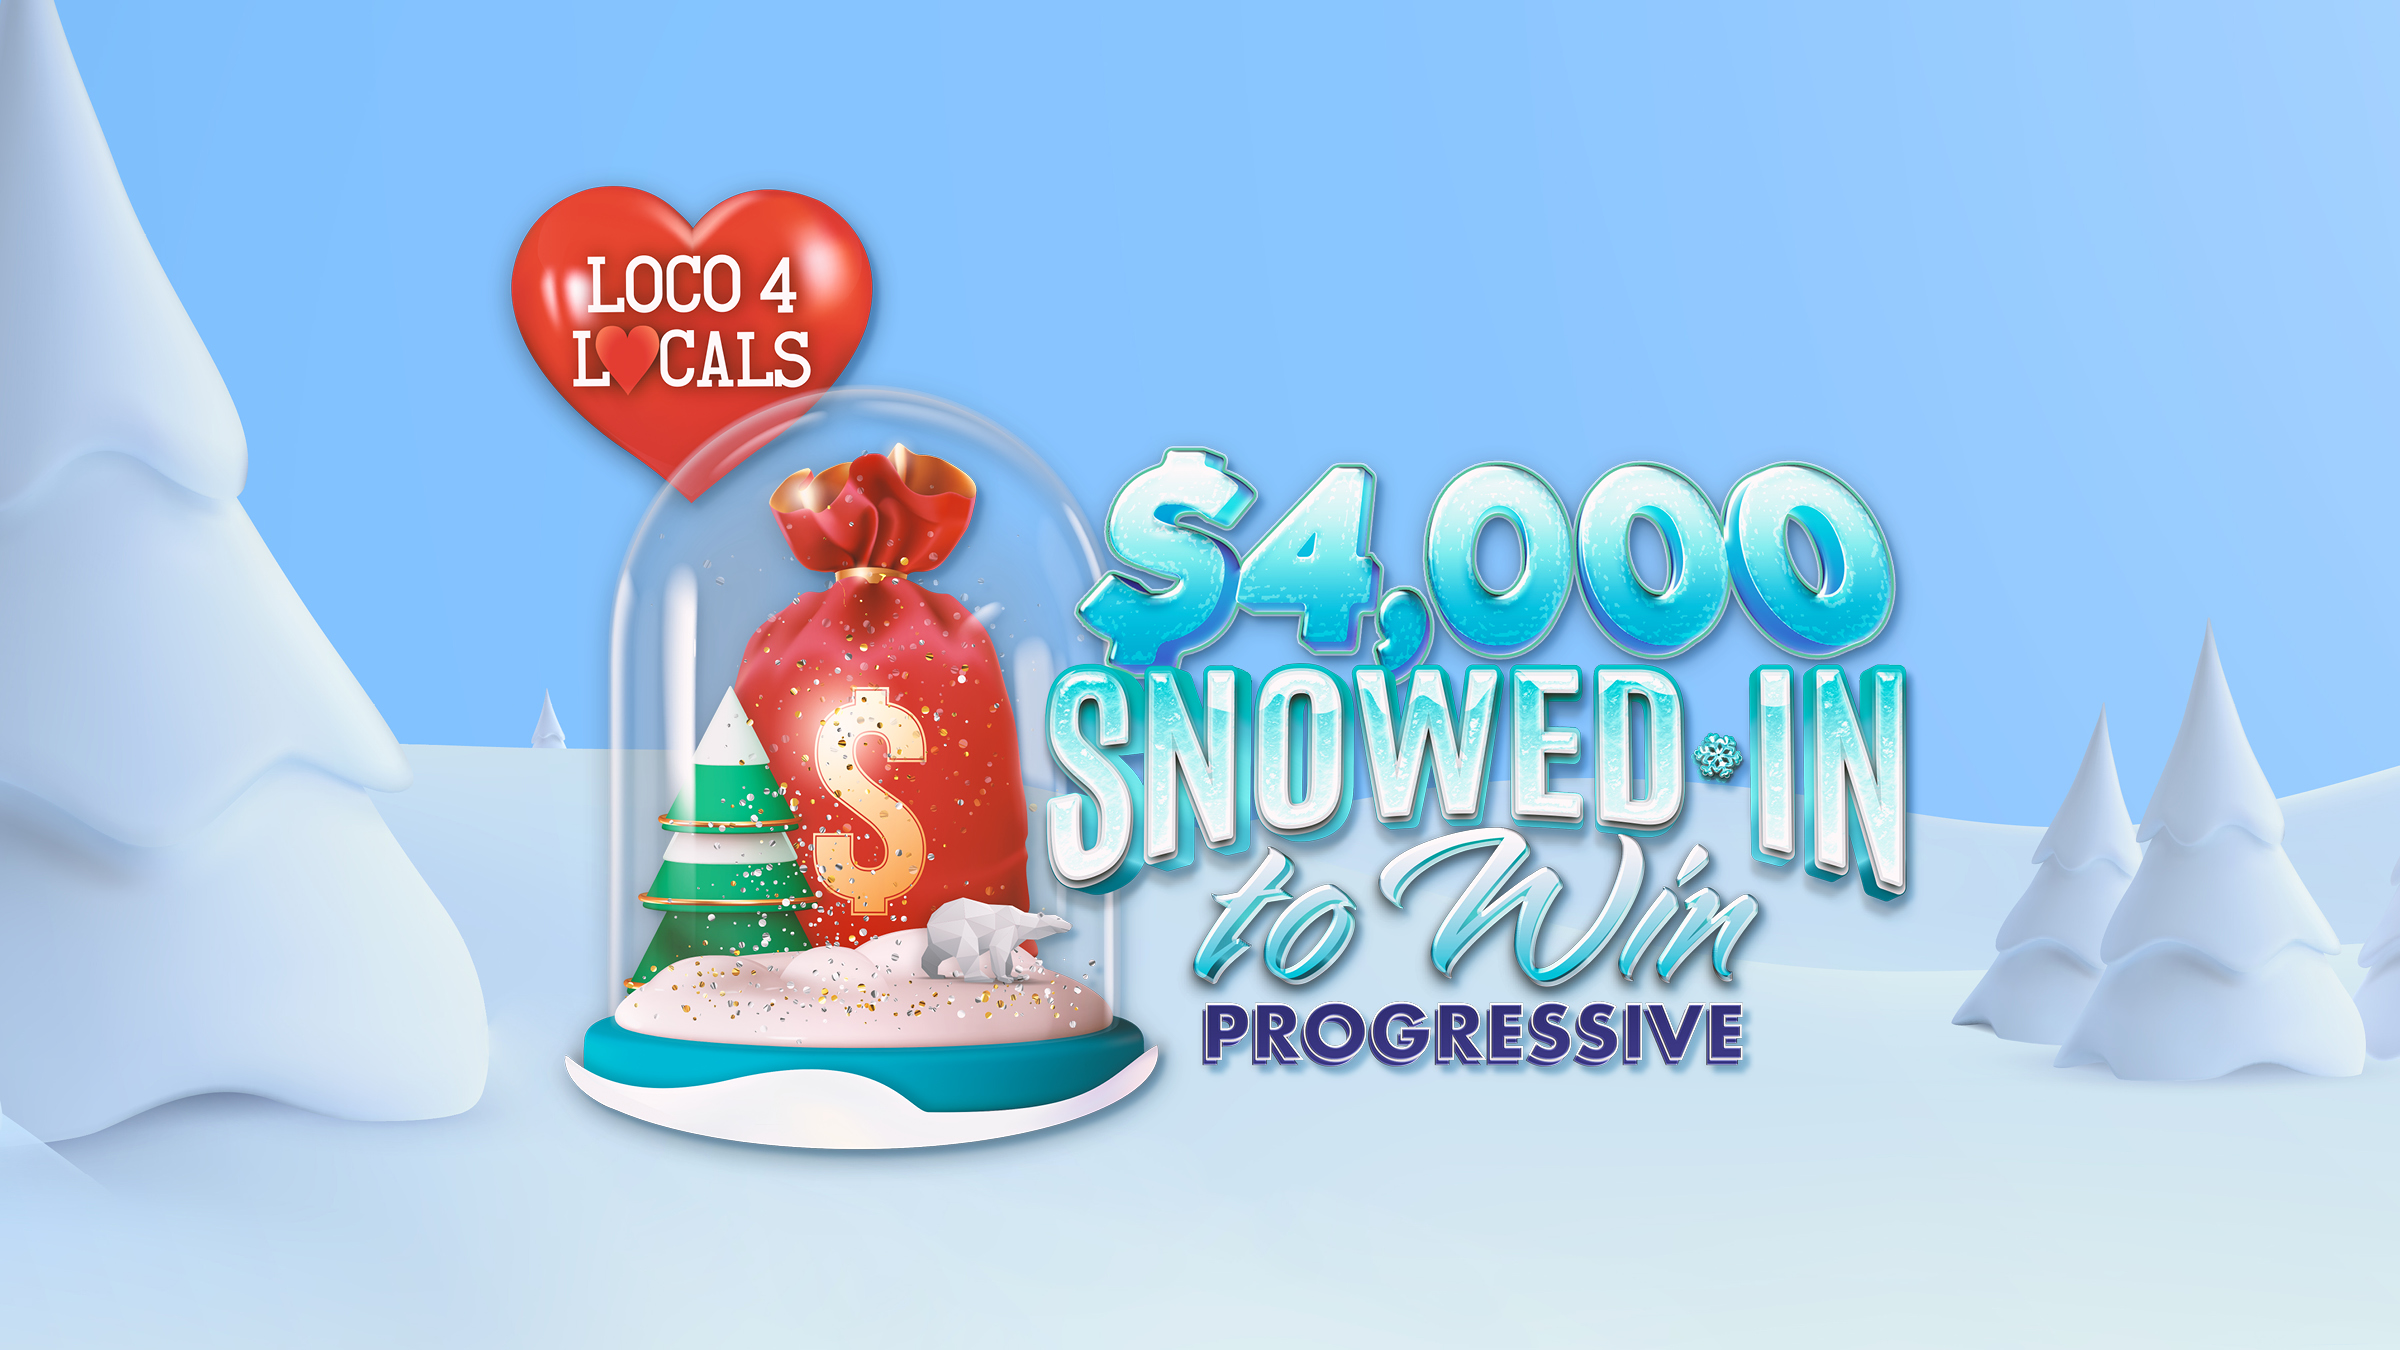 Loco 4 Locals – $4,000 Snowed In To Win Progressive